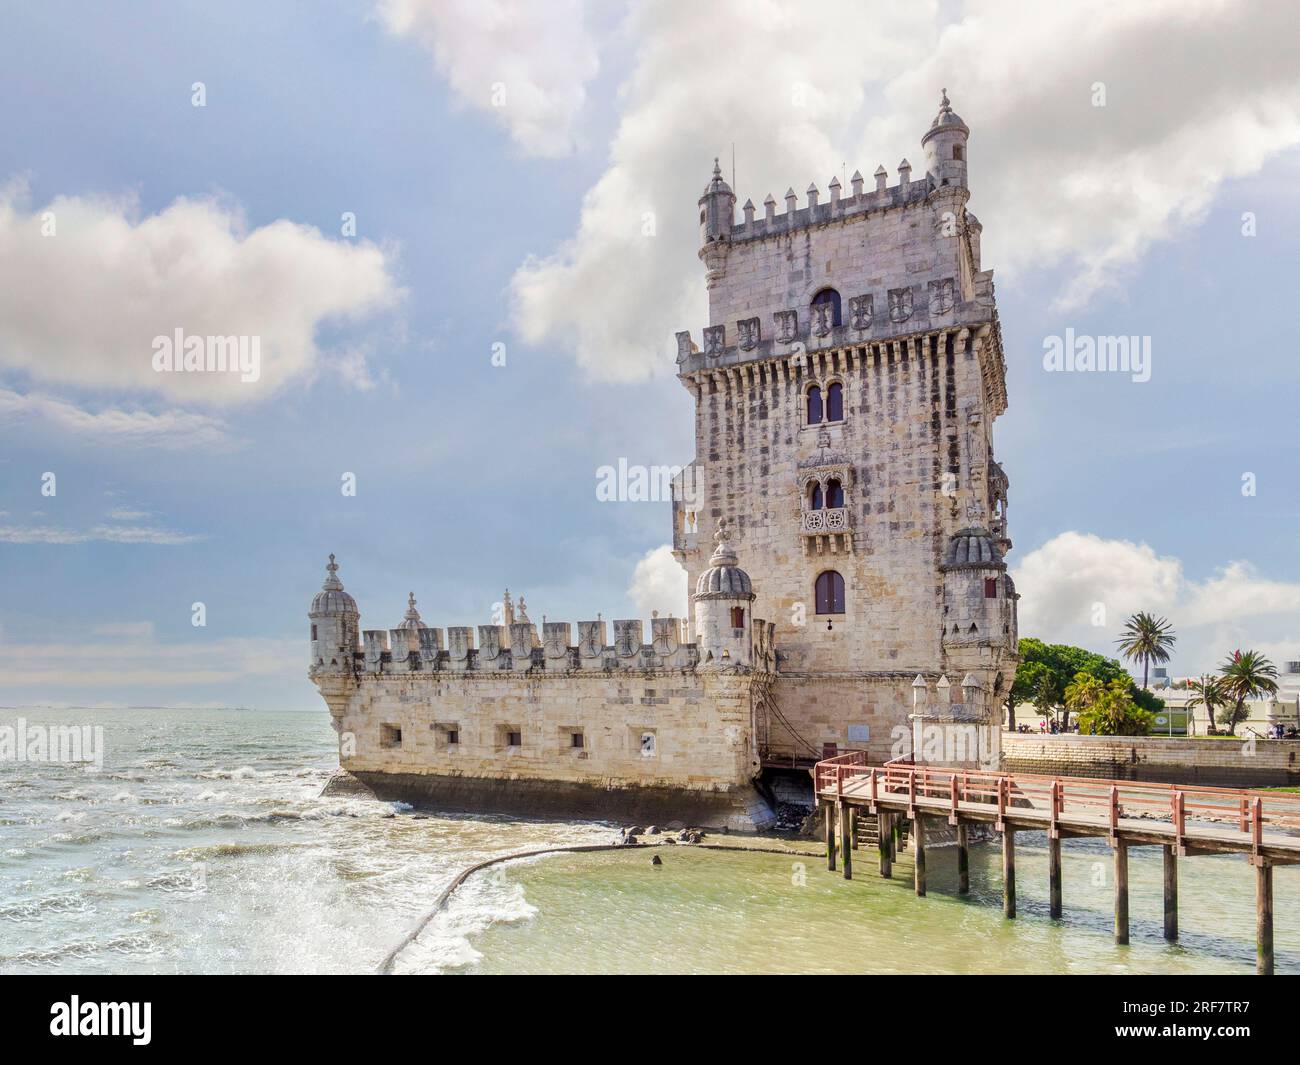 5 mars 2018 : Lisbonne, Portugal - la Tour de Belem, monument célèbre et site du patrimoine mondial de l'UNESCO. C'était un point d'embarquement et de débarquement pour... Banque D'Images